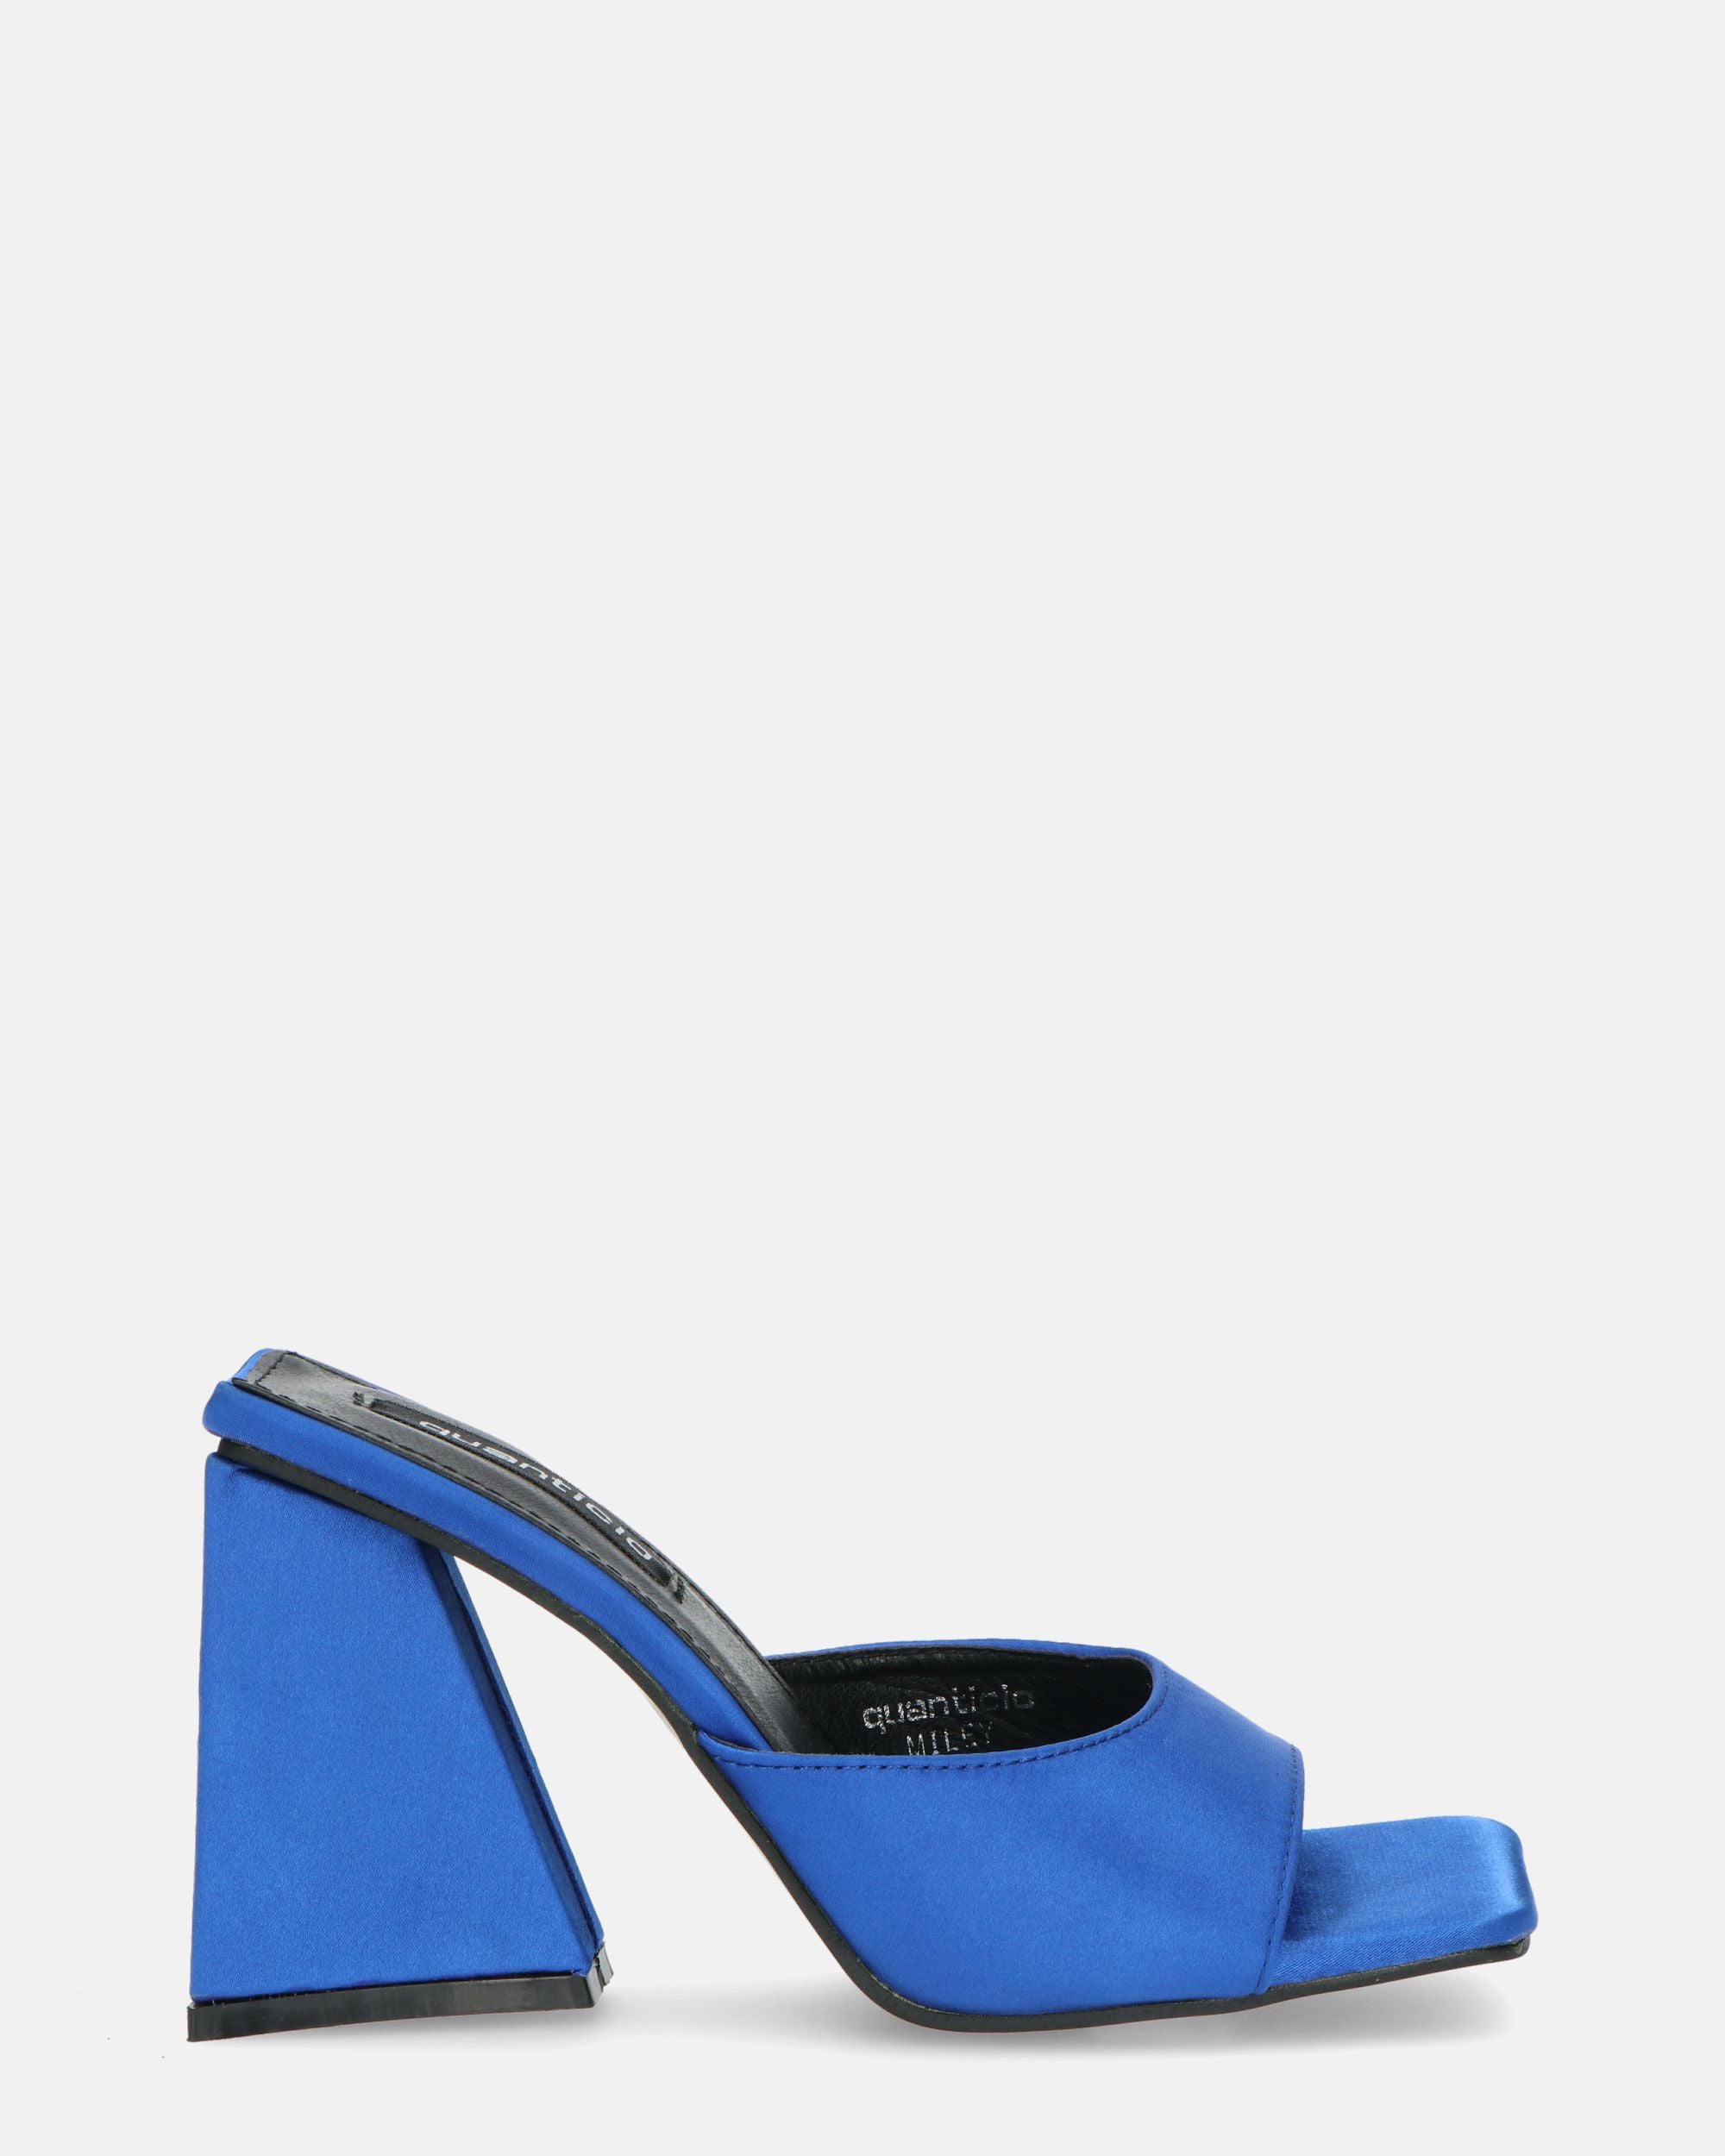 MILEY - sandales en satin bleu à talon carré